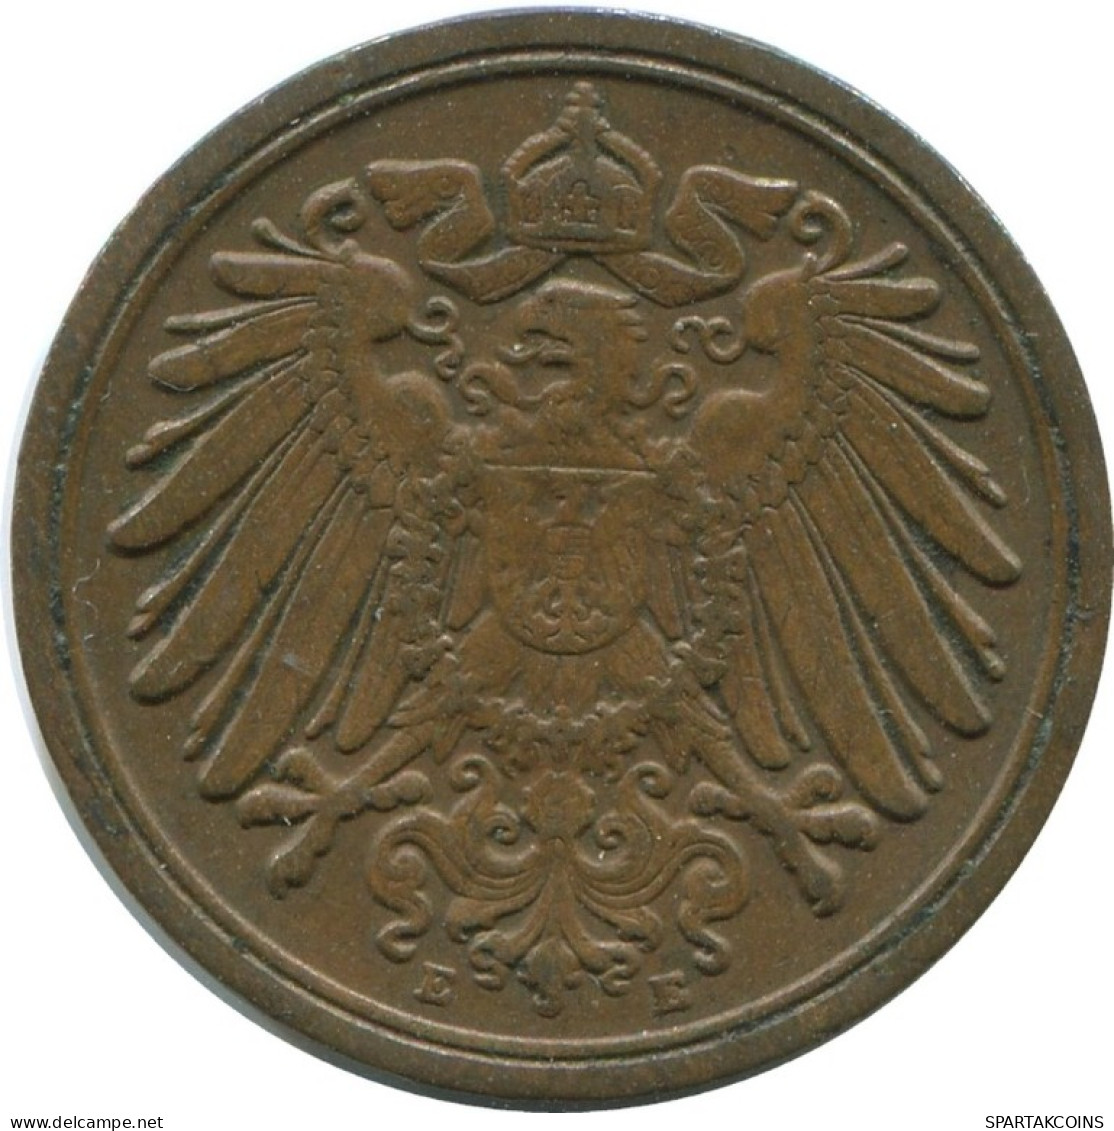 1 PFENNIG 1912 E GERMANY Coin #AE592.U.A - 1 Pfennig